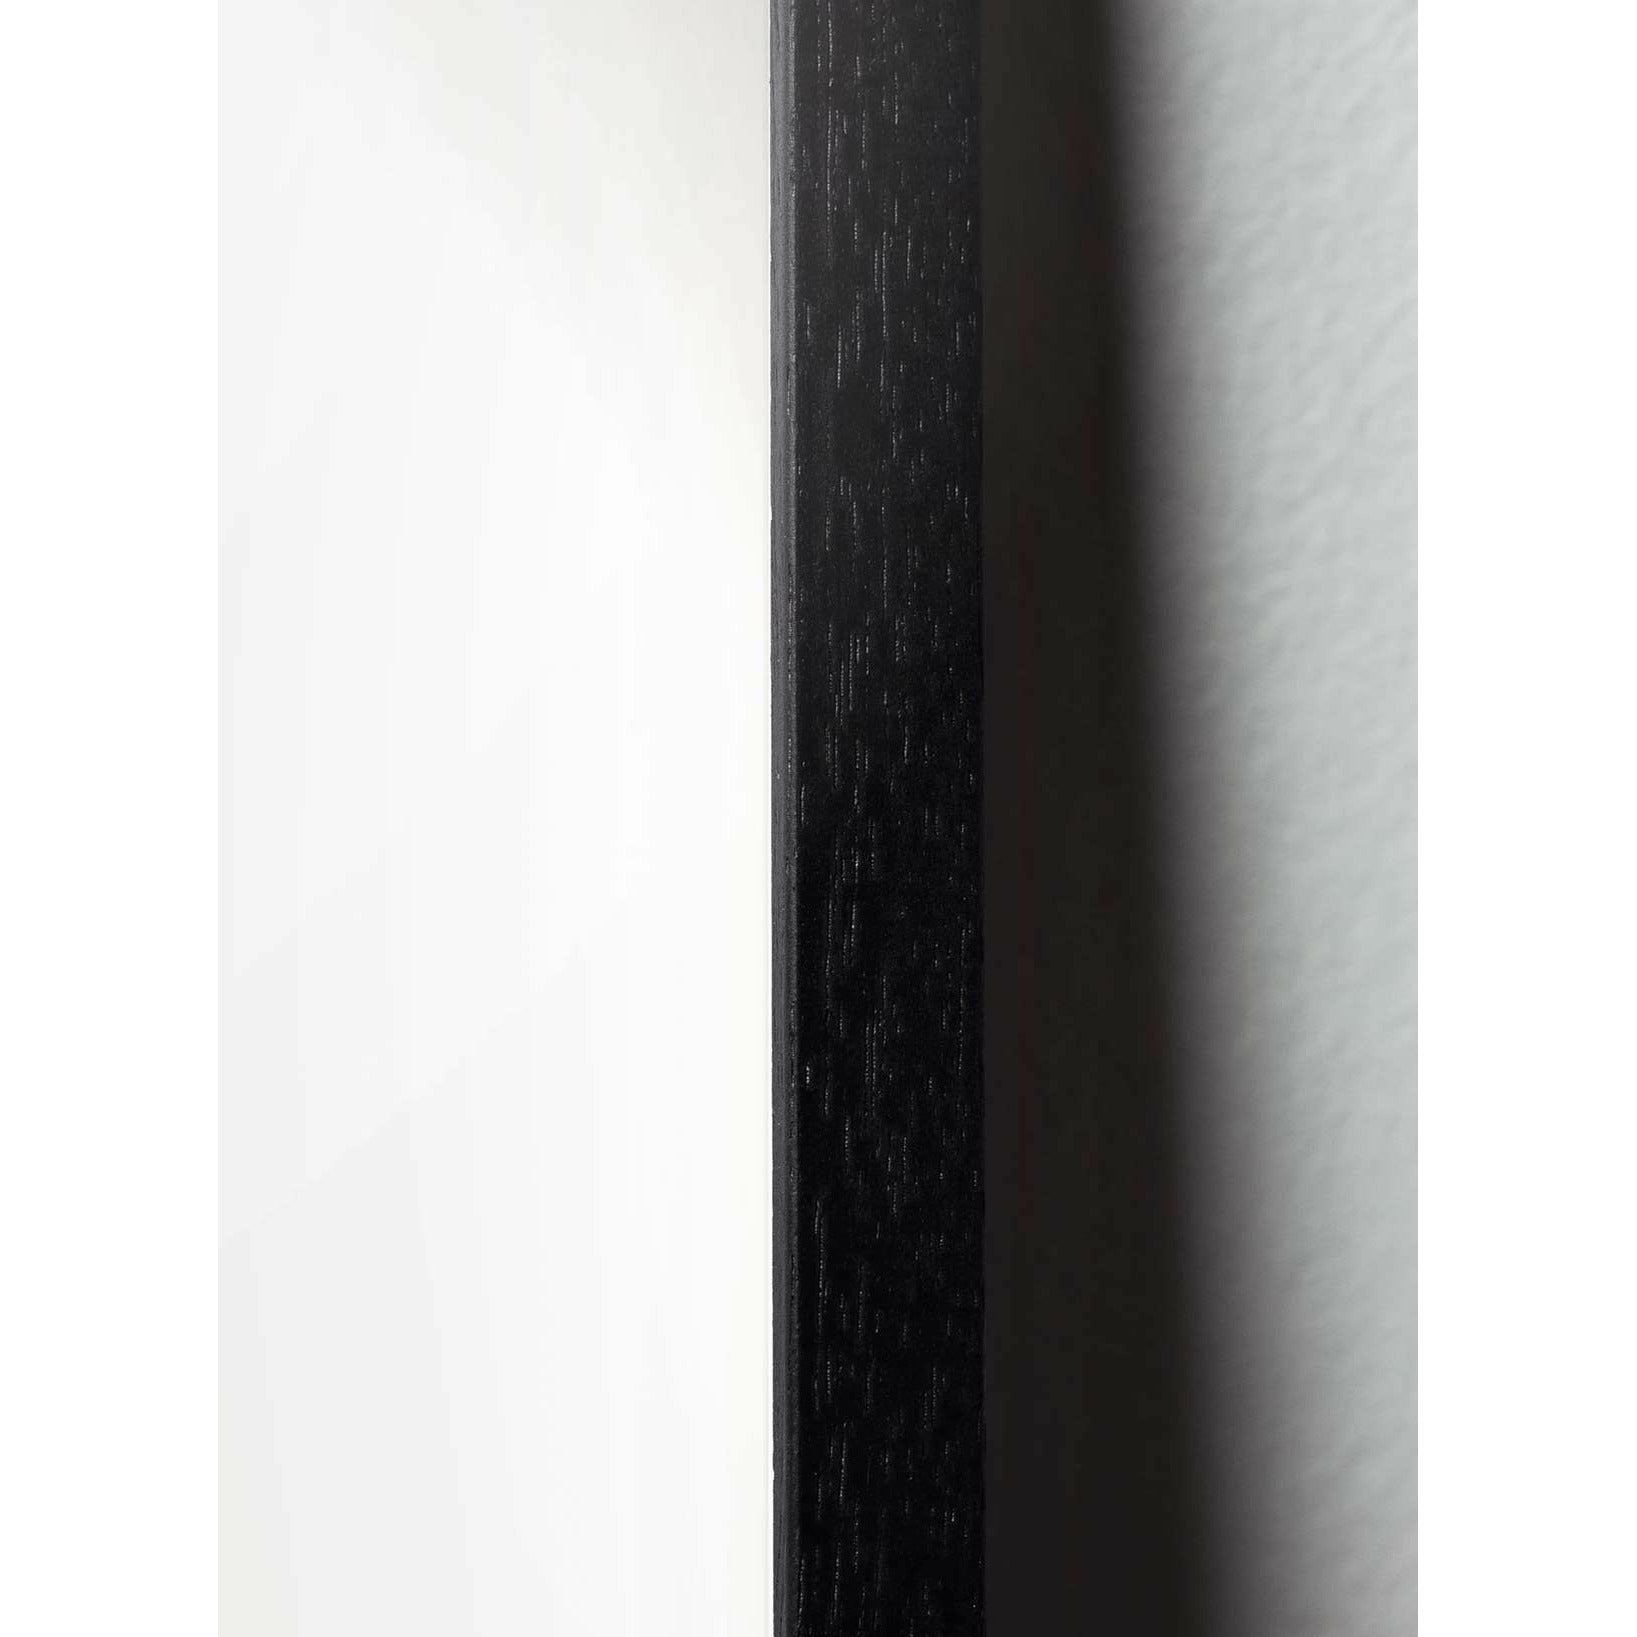 Pomysły plakat klipu na papierze łabędzia, rama w czarnym lakierowanym drewnie 50x70 cm, różowe tło